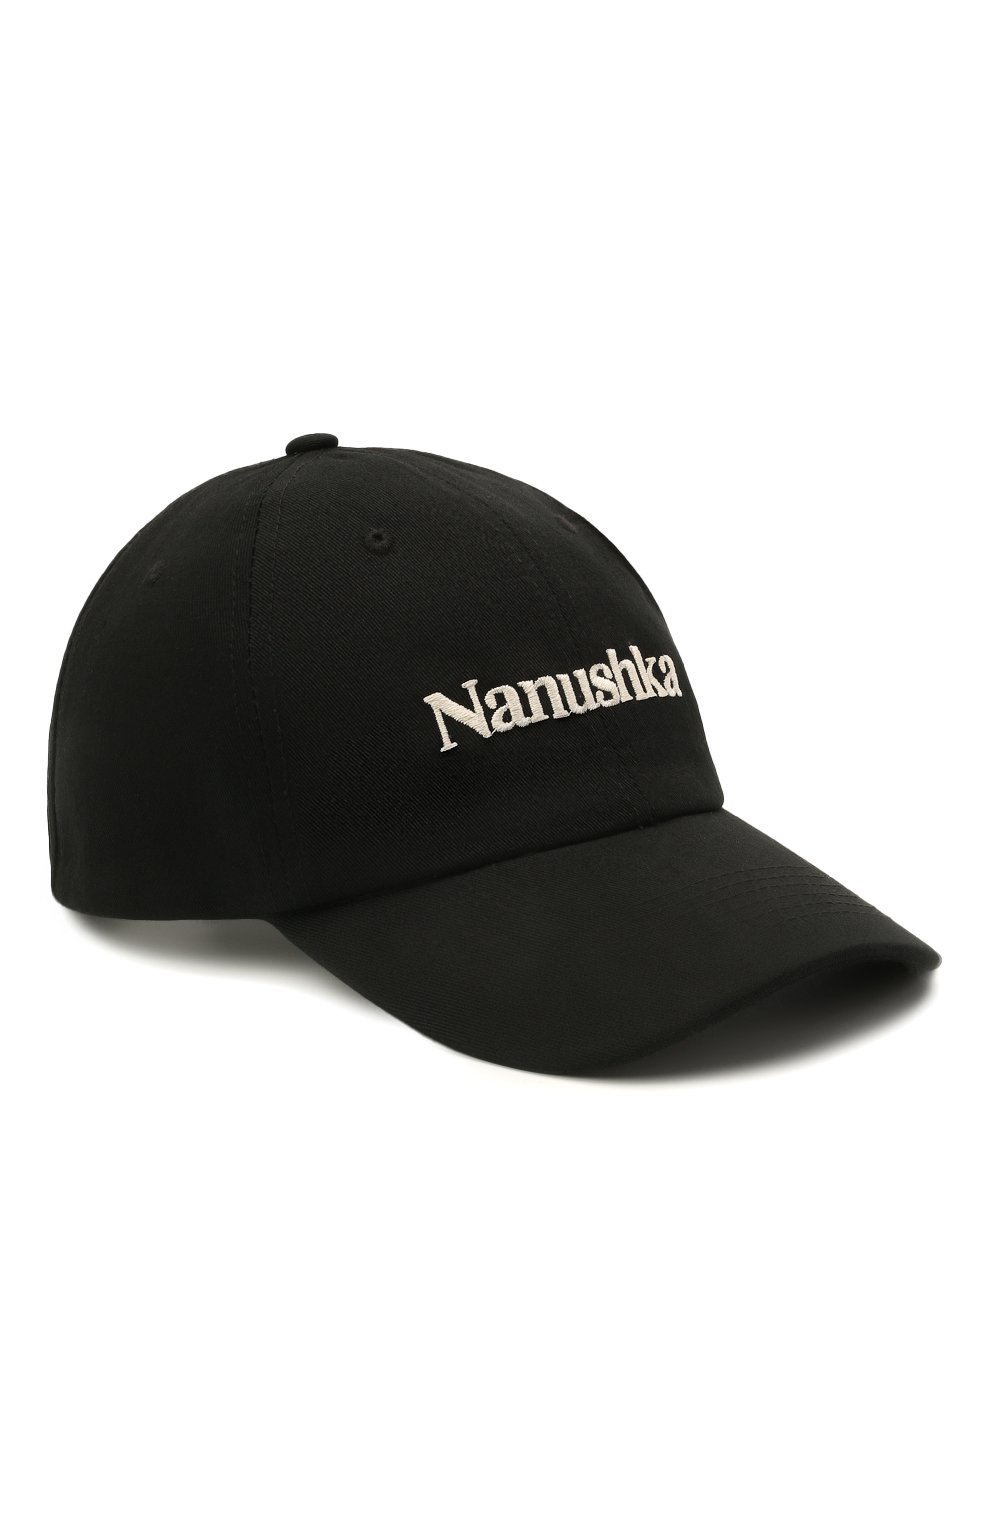 Женская хлопковая бейсболка NANUSHKA черного цвета, арт. VAL_BLACK_C0TT0N CANVAS | Фото 1 (Материал: Текстиль, Хлопок)